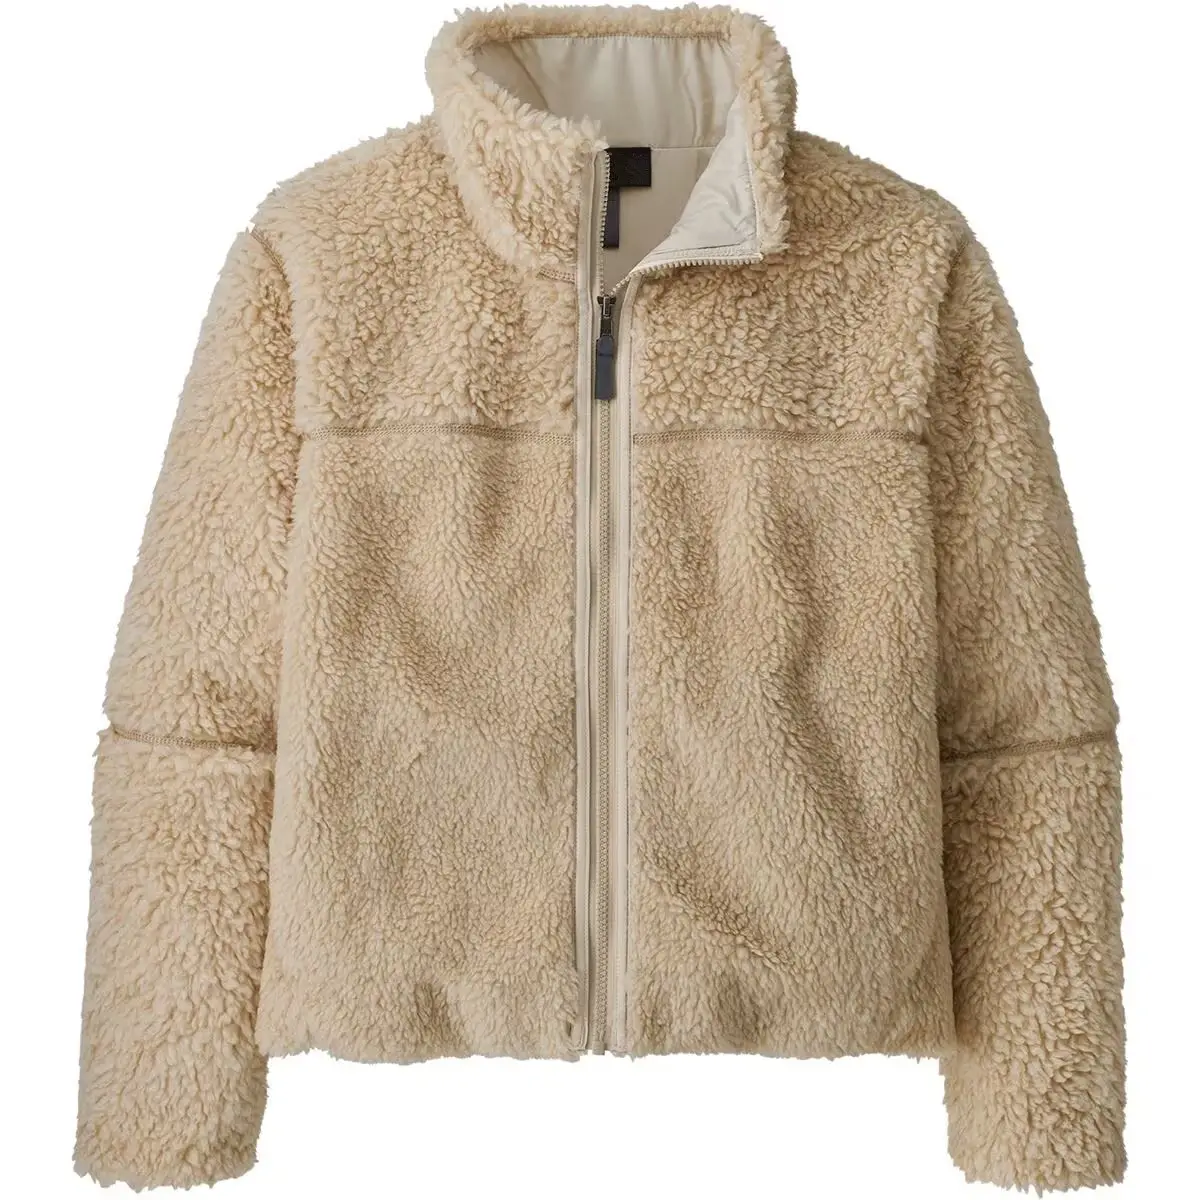 Klassischer Stil Fleece Reißverschlussjacke hochwertige individuelle Fleece-Jacke für Damen